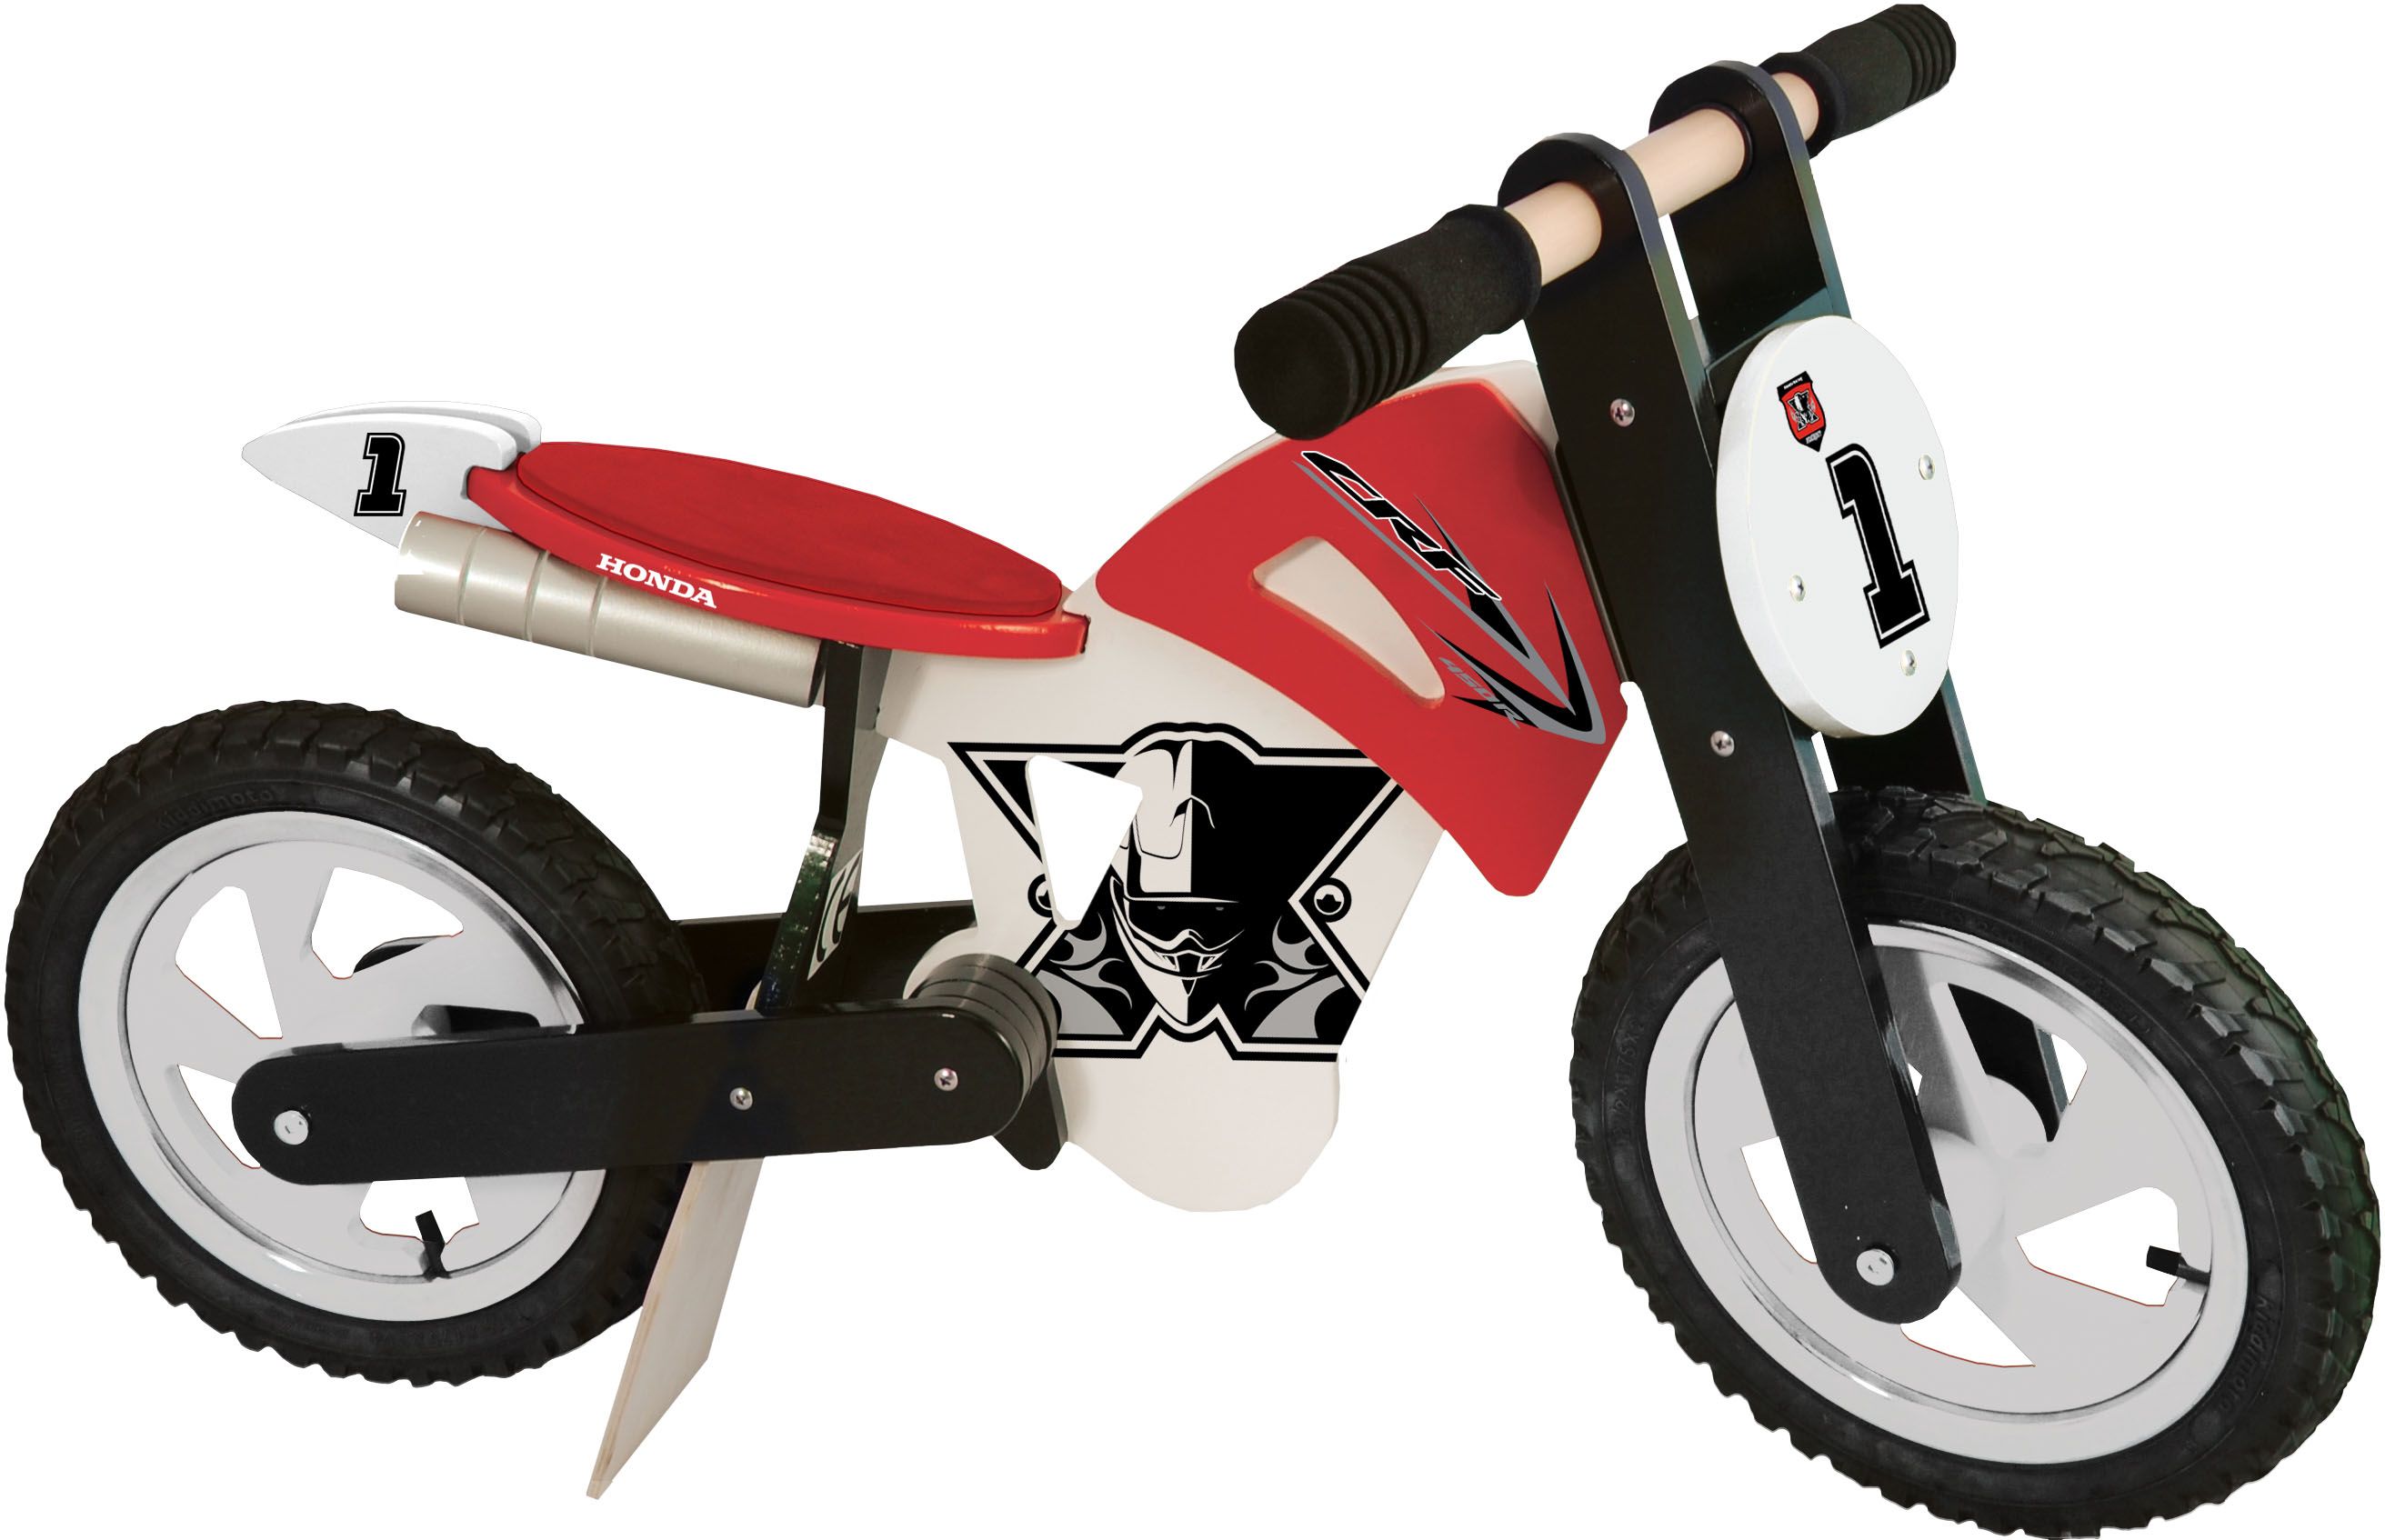 Schlüßelanhänger - gummiert PWING Euro 3,00 Kiddy Bike - Holzlaufrad - mit Luftreifen - CRF Design 08MLW-11M-KIDBK Euro 144,00 Toaster - Außen Kunststoffgehäuse; - Röstvorrichtung in